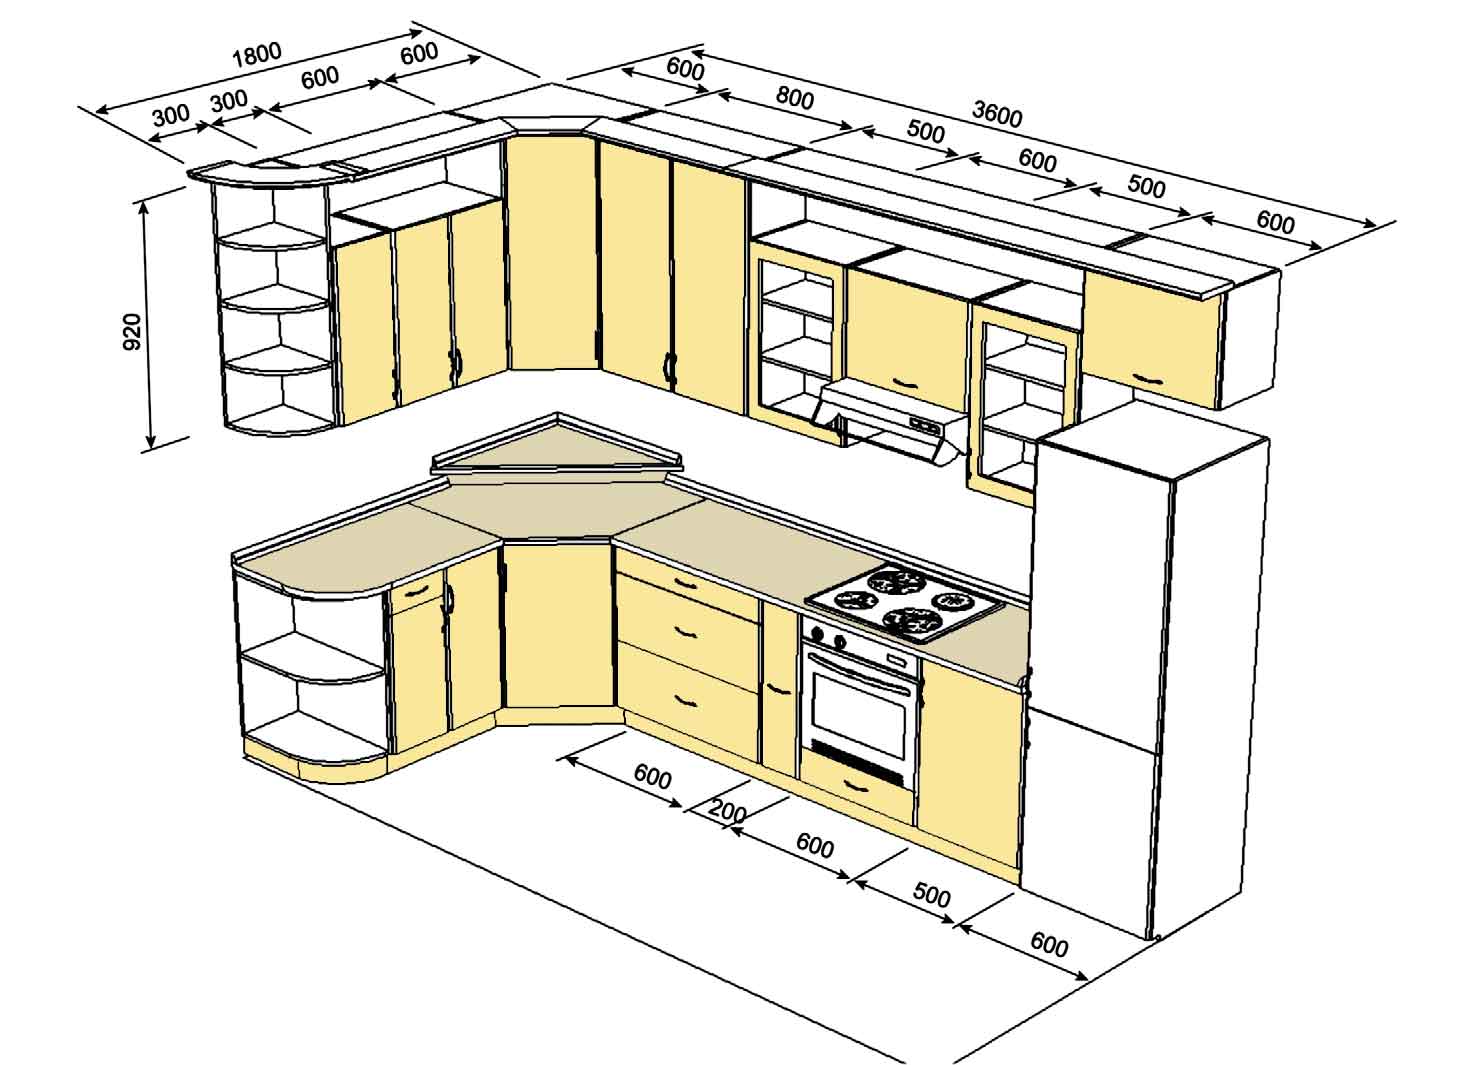 Кухонный гарнитур — важнейший элемент оснащения комнаты, поэтому его структуру проработайте на чертеже особо тщательно.